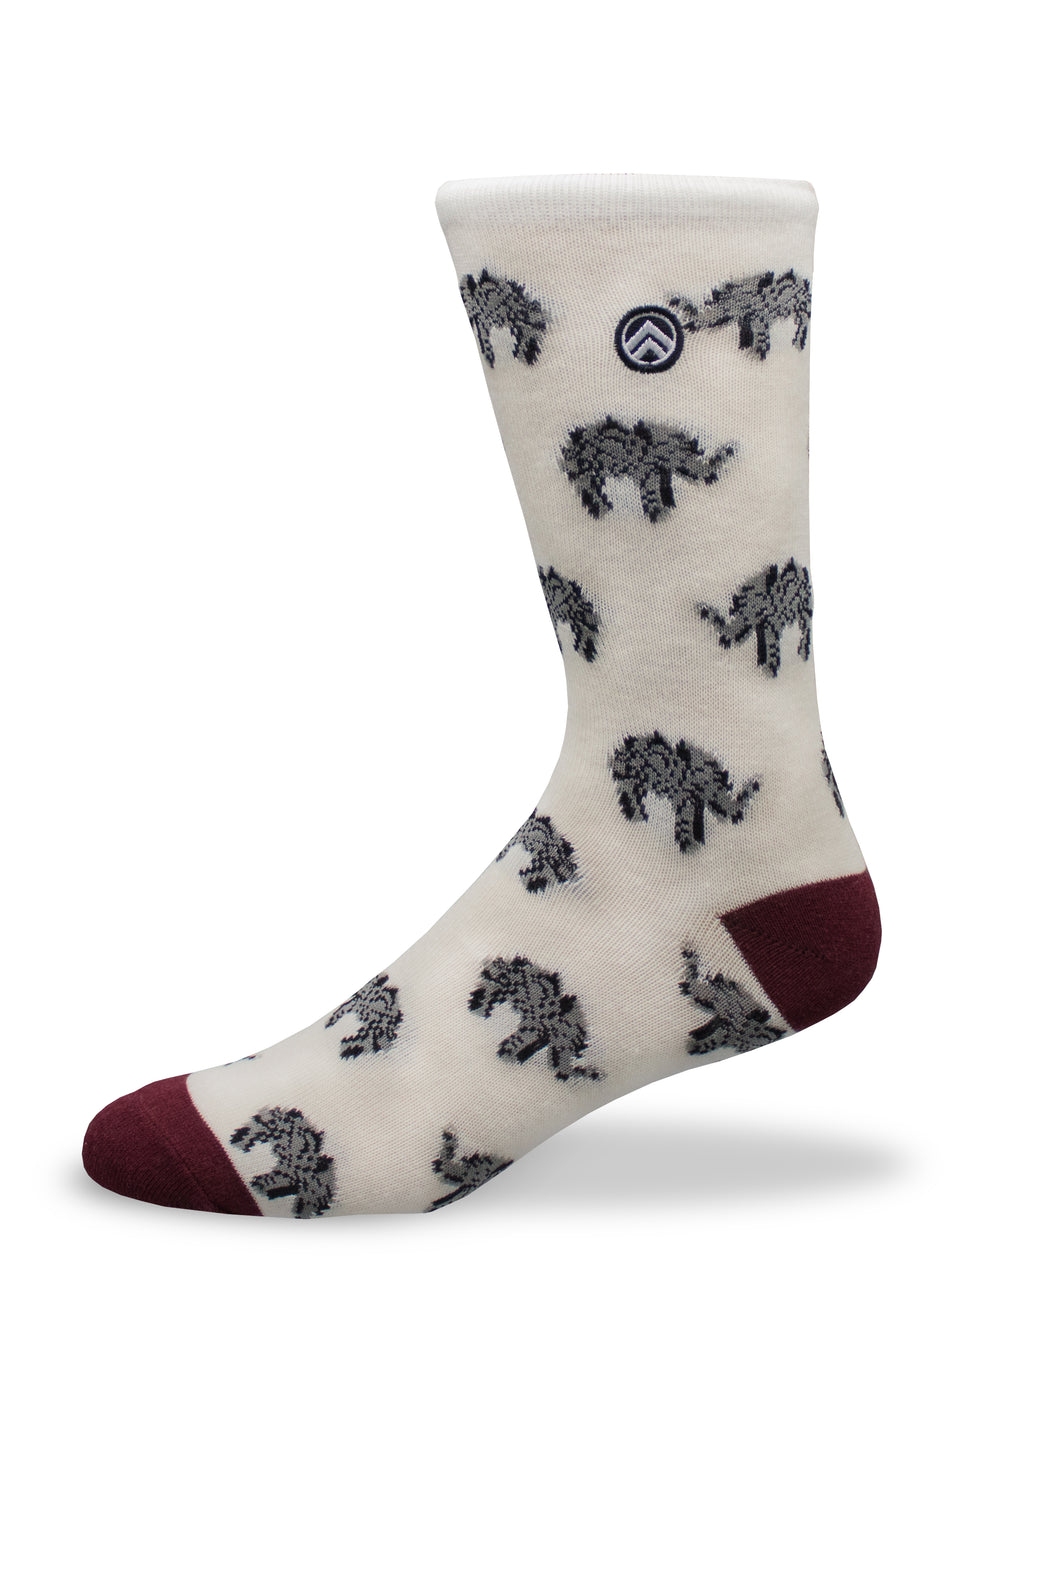 Sky Footwear Socks, Elephant